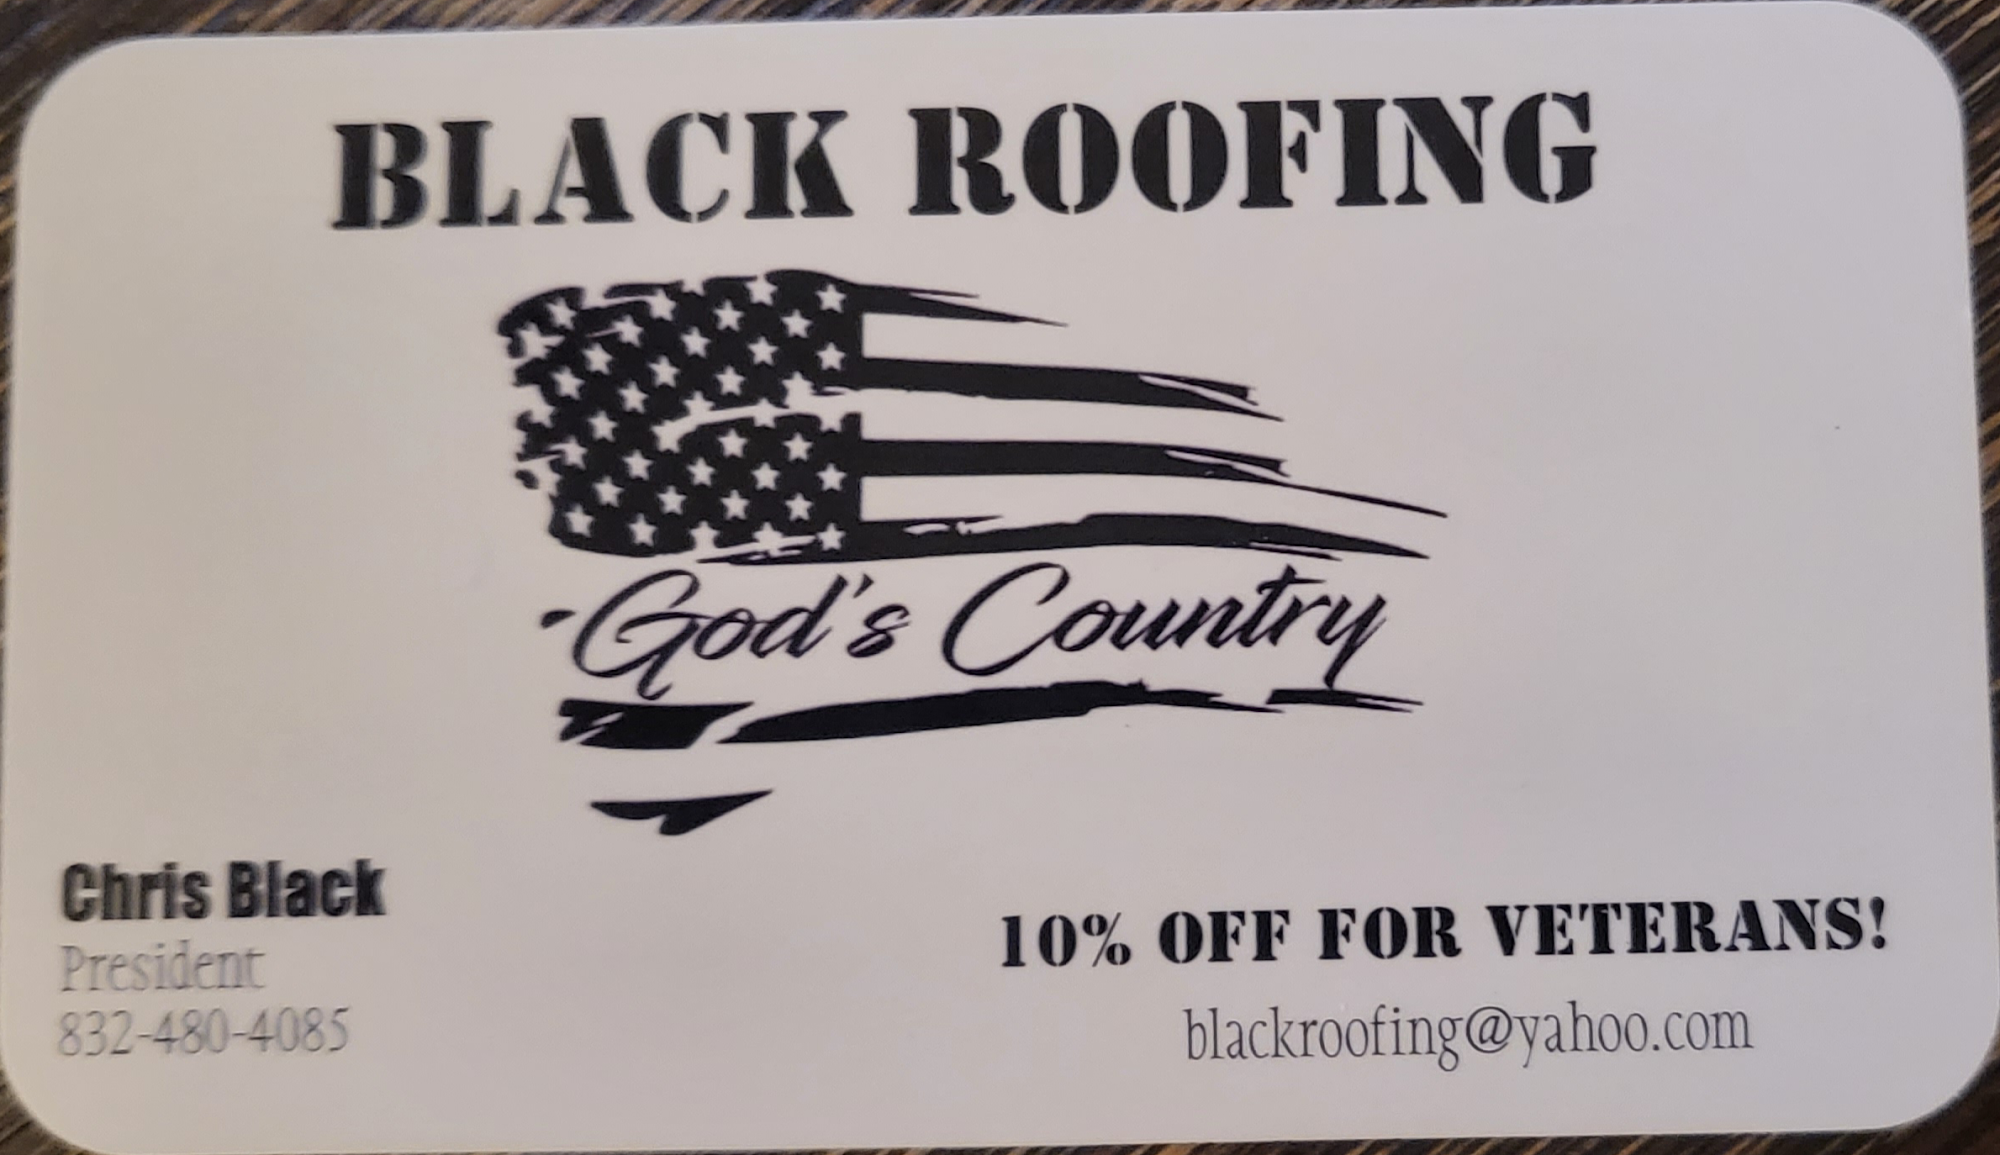 Black Roofing & Remodeling